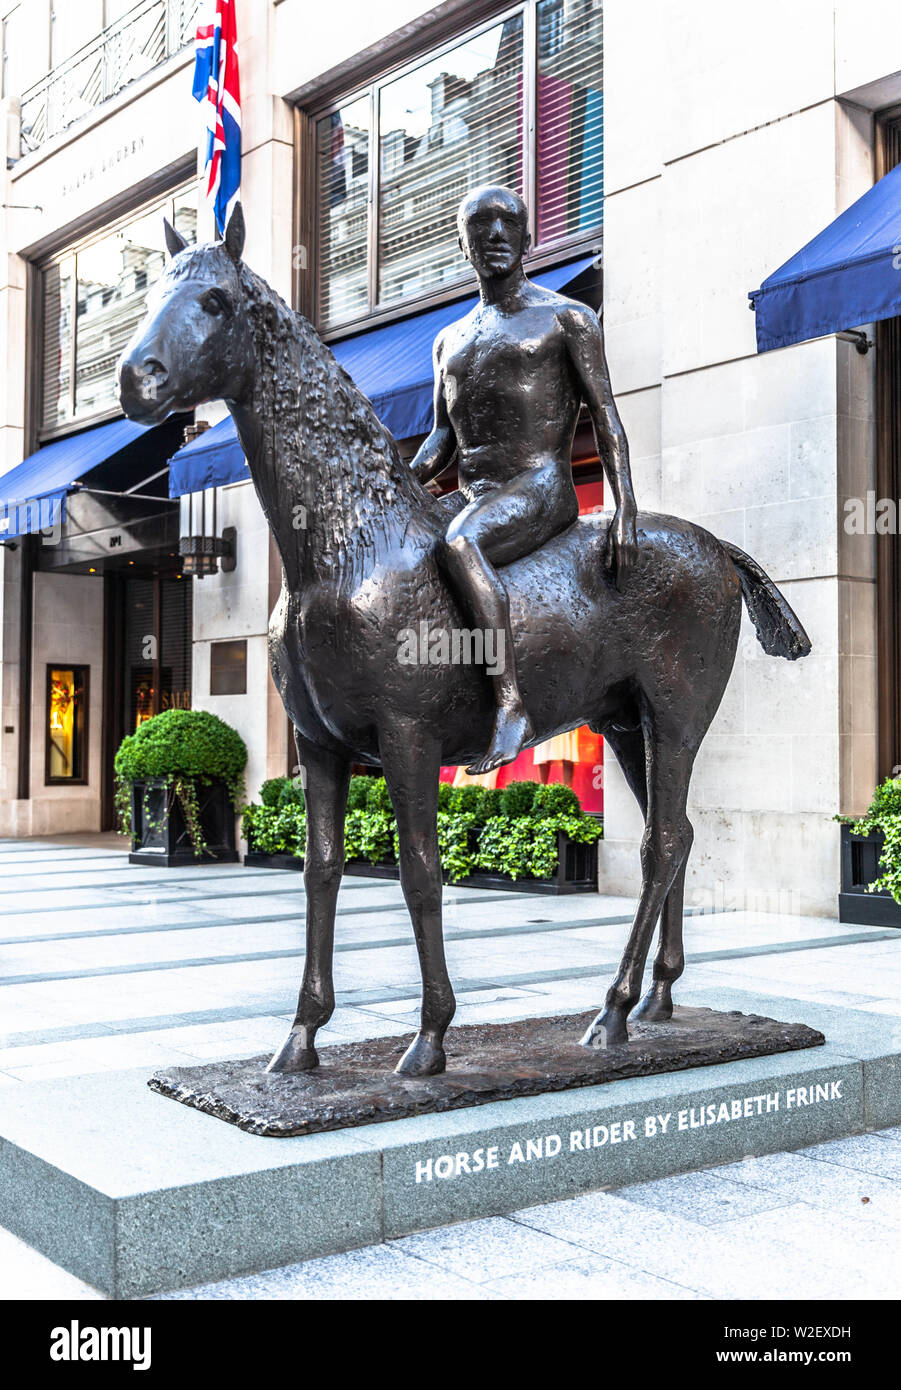 Statua di Horse and Rider di Elisabeth Frink, New Bond Street, Londra, Inghilterra, Regno Unito. Foto Stock